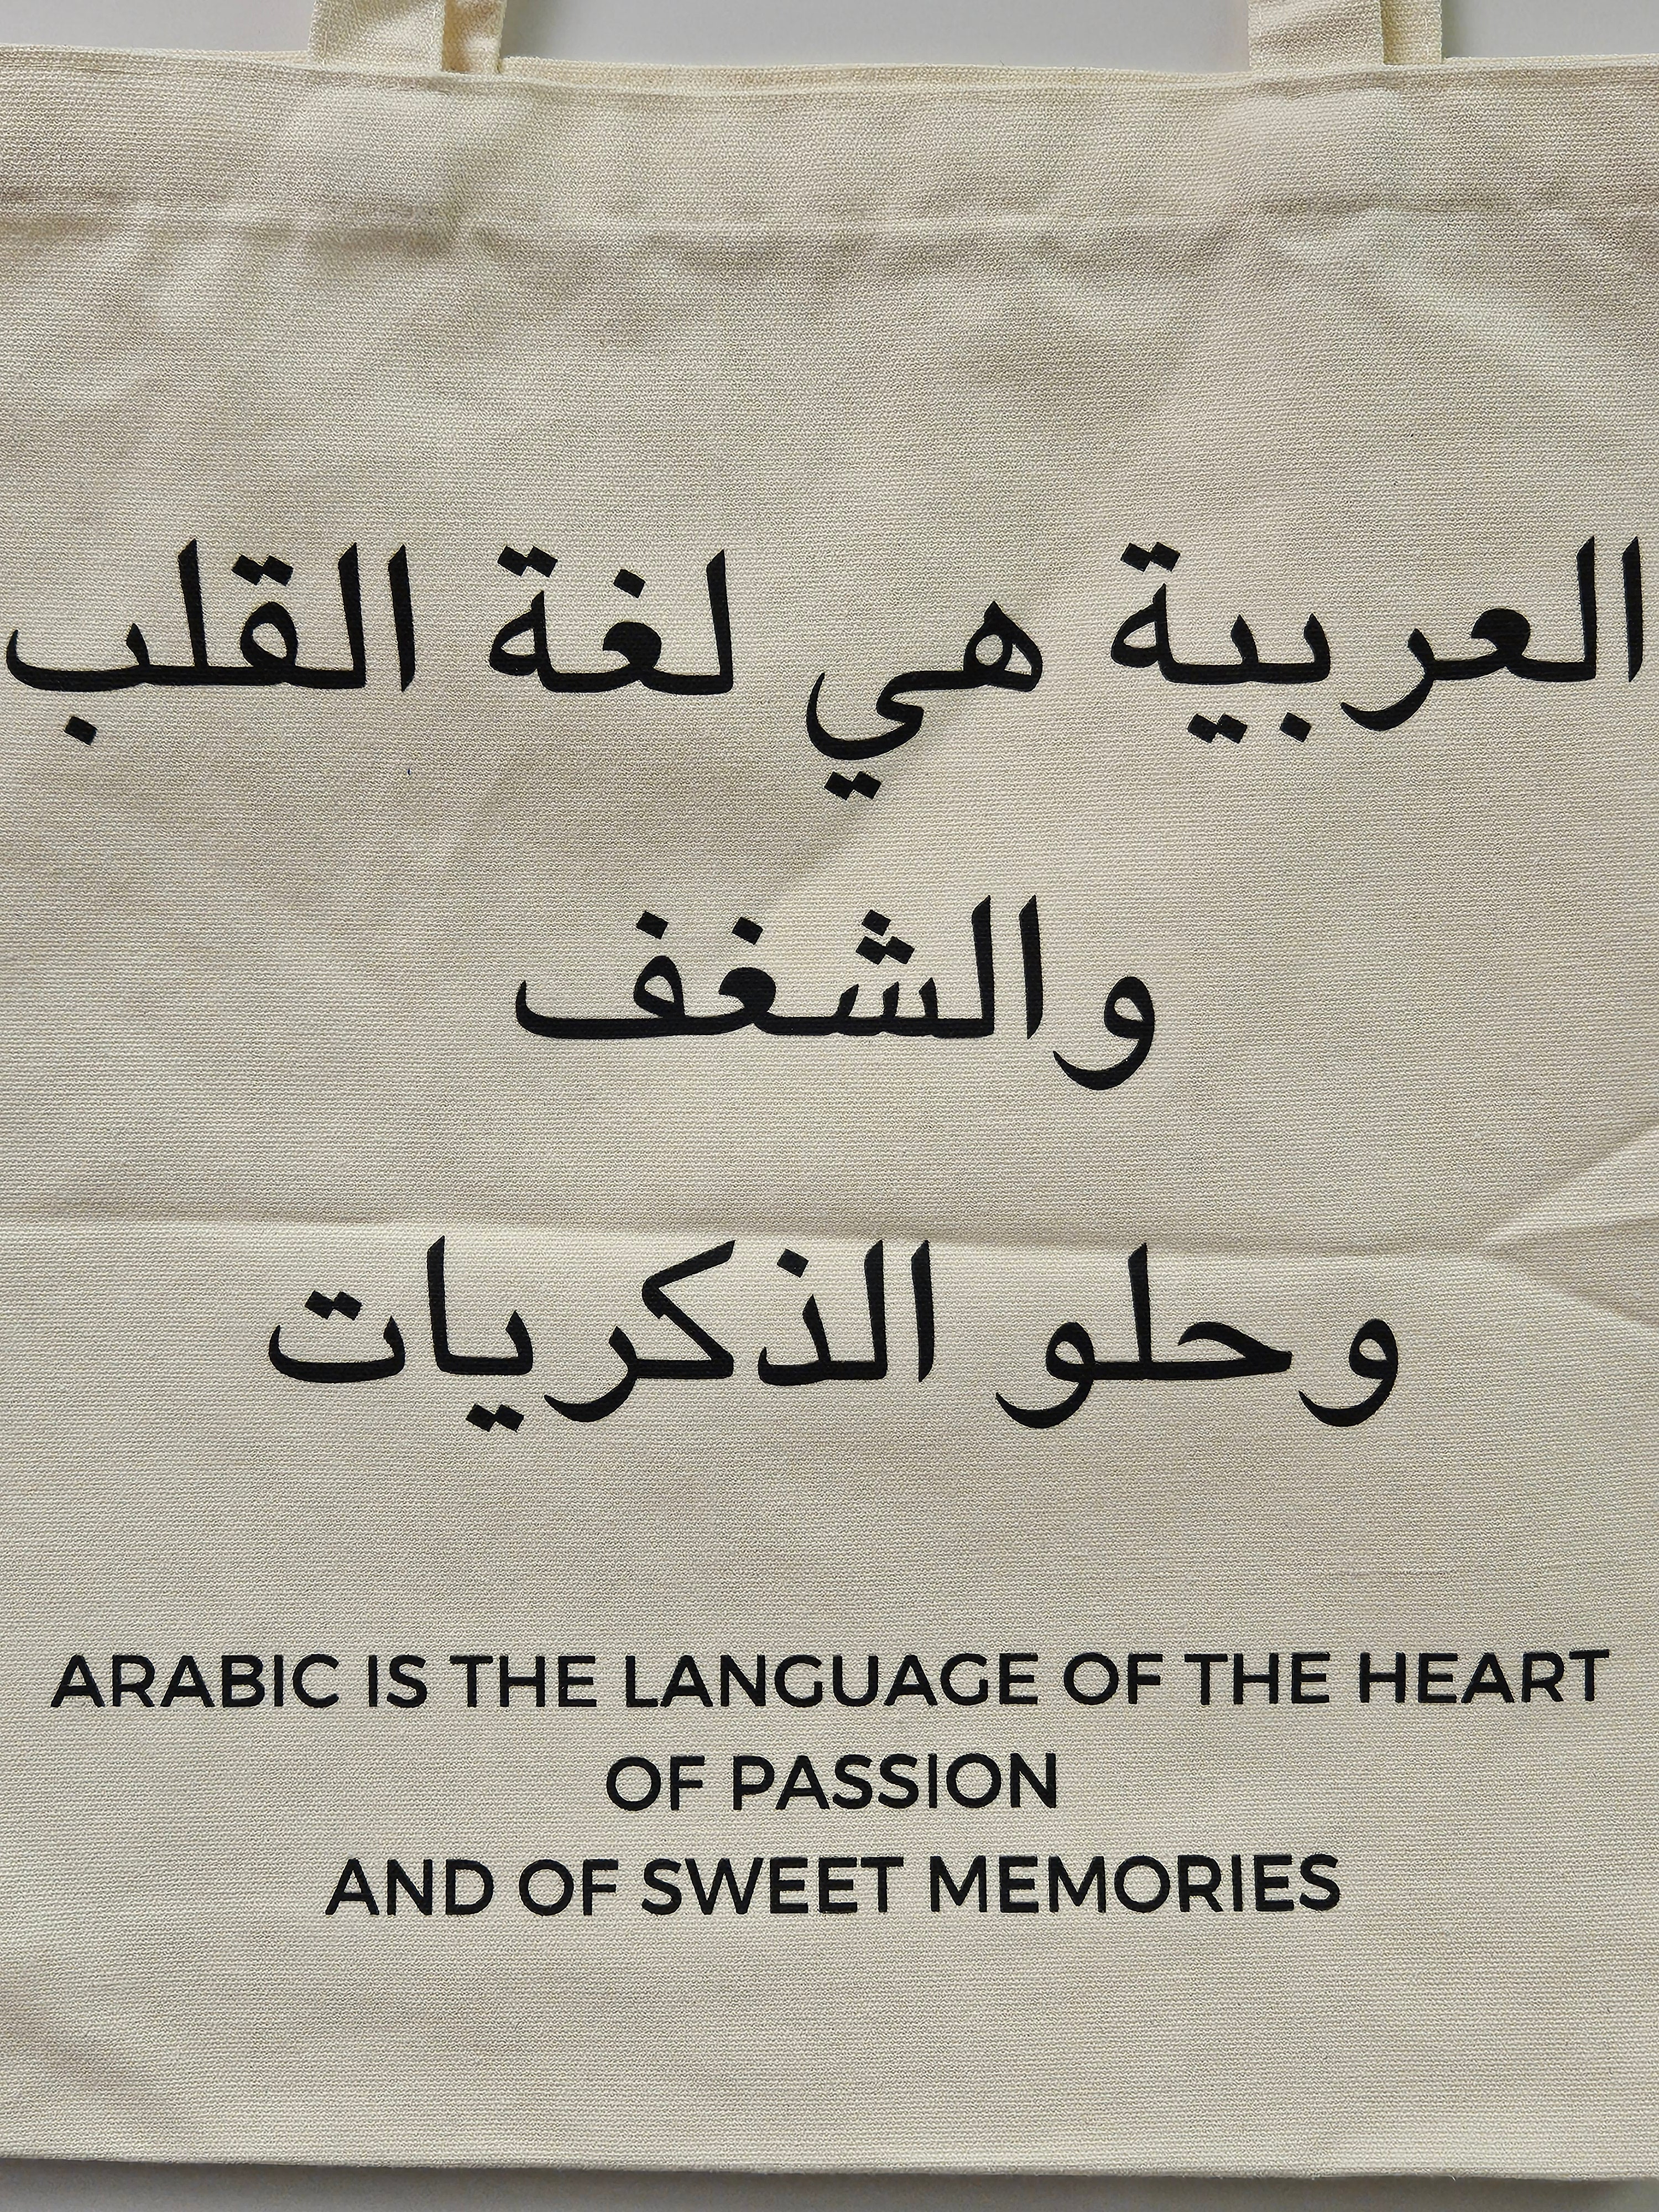 "Arabic is the Language of Heart" Canvas Tote Bag - Mahmoud Darwish - Habibi Heritage